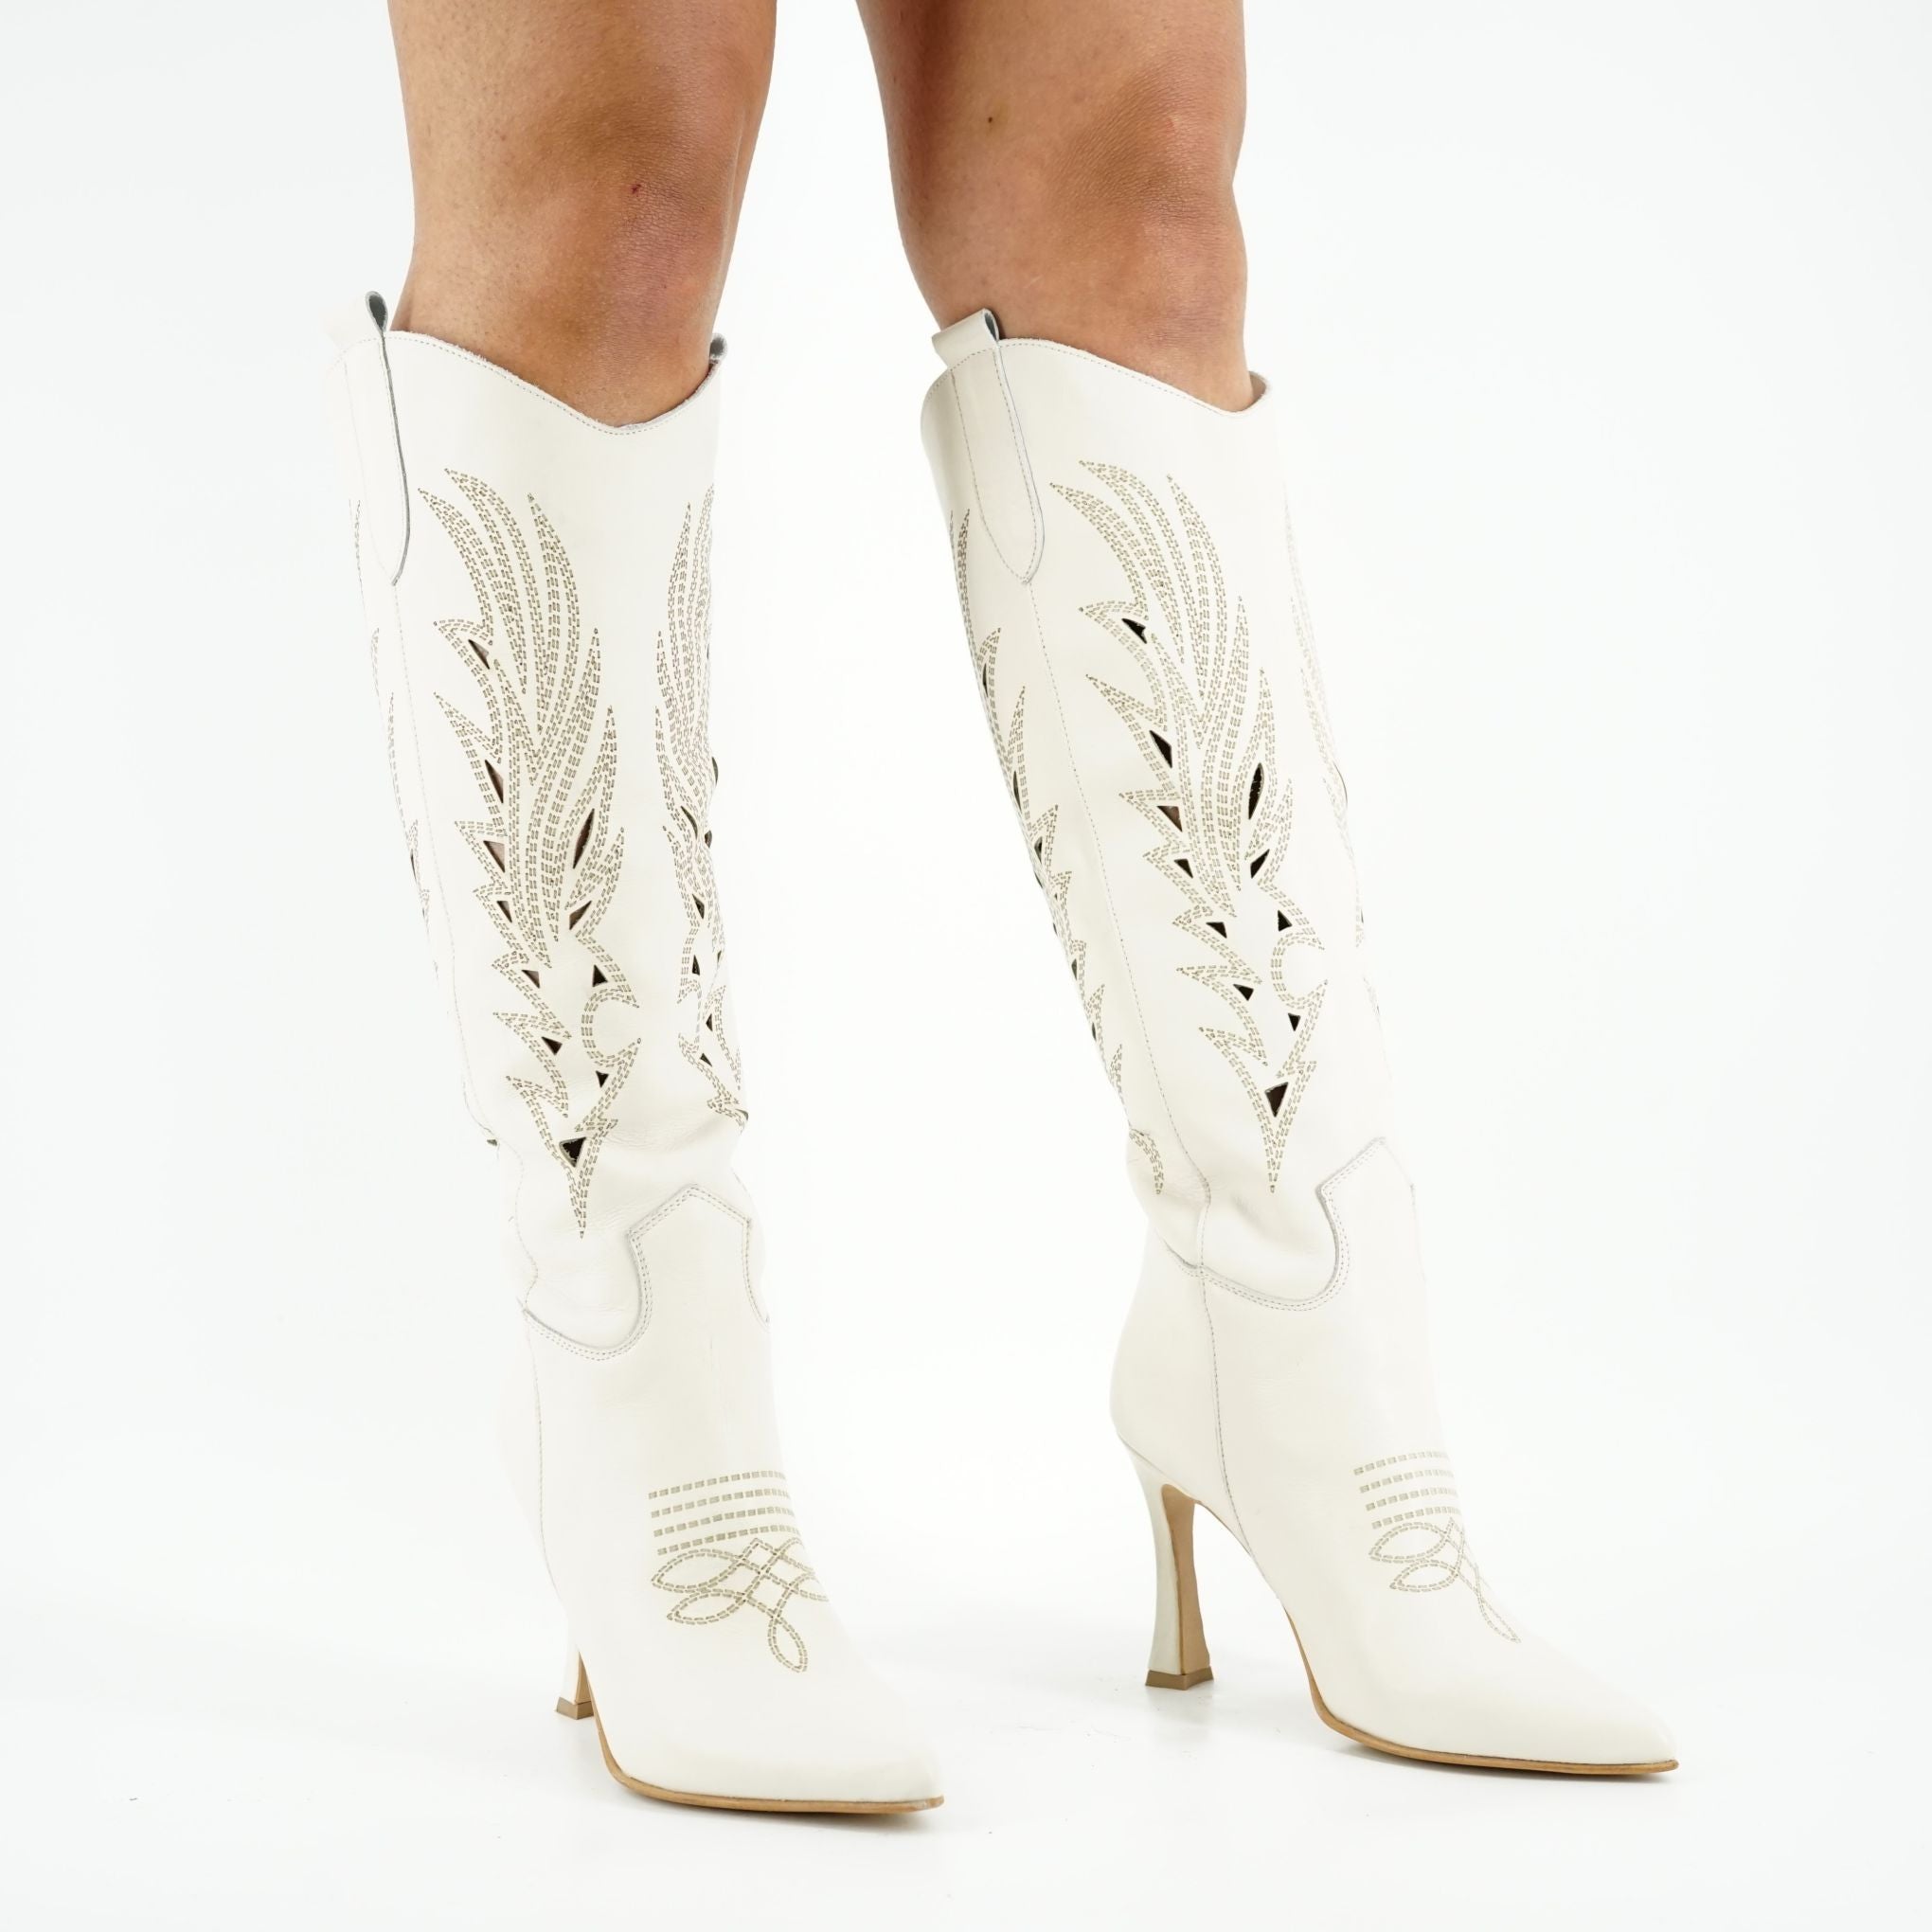 Stivali lunghi Testa stile texano con tacco alto sottile in pelle: SARA 40LAS